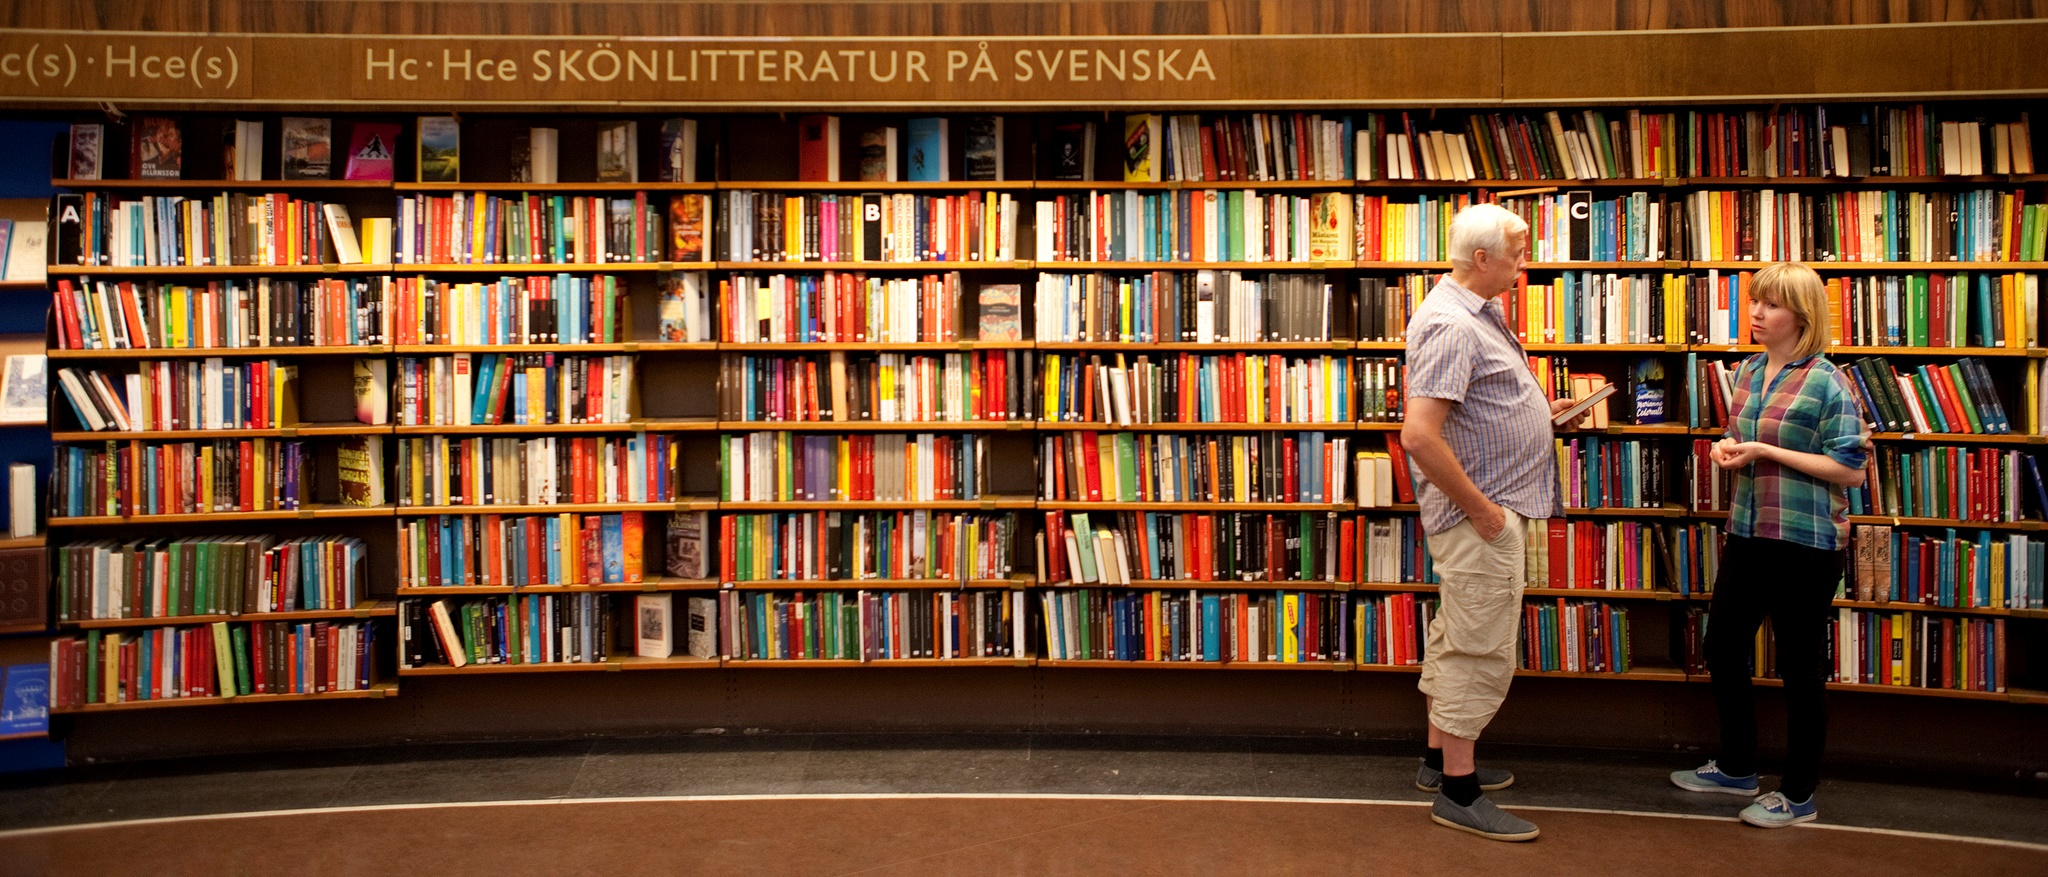 Två personer står vända mot varandra framför en vägg bokhyllor.